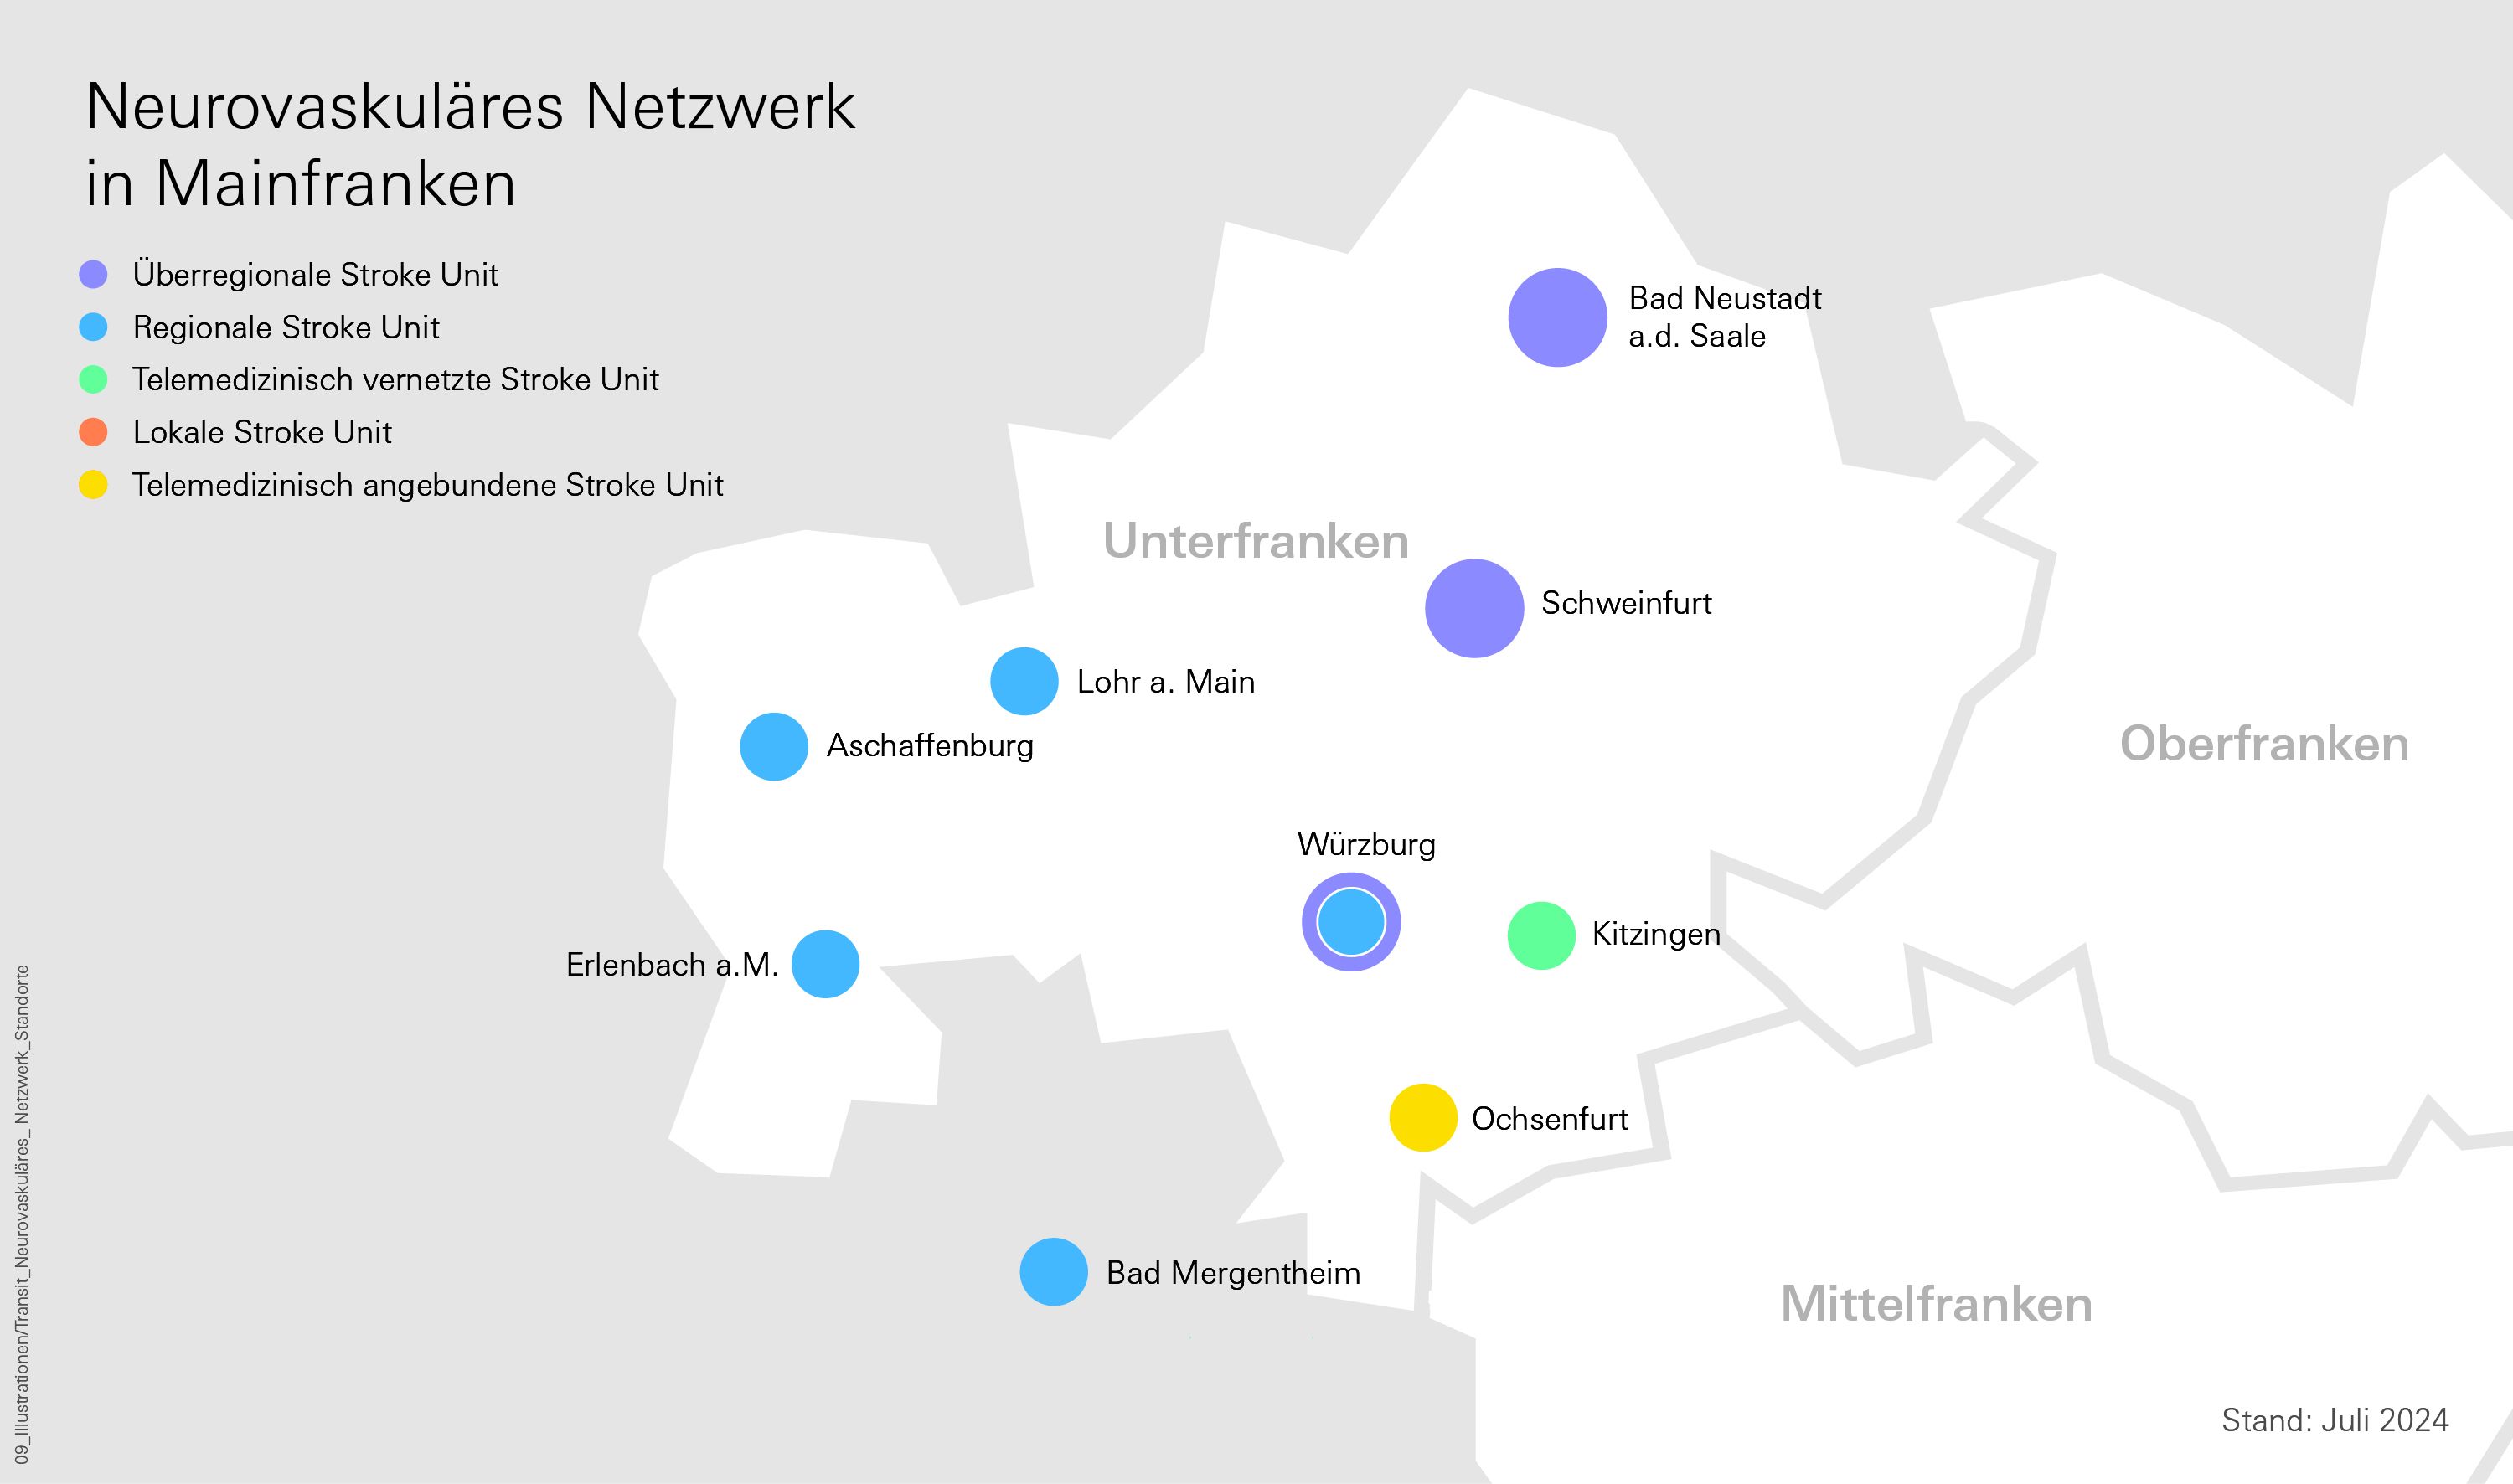 Übersichtskarte der teilnehmenden Einrichtungen am Neurovaskulären Netzwerk Unterfranken